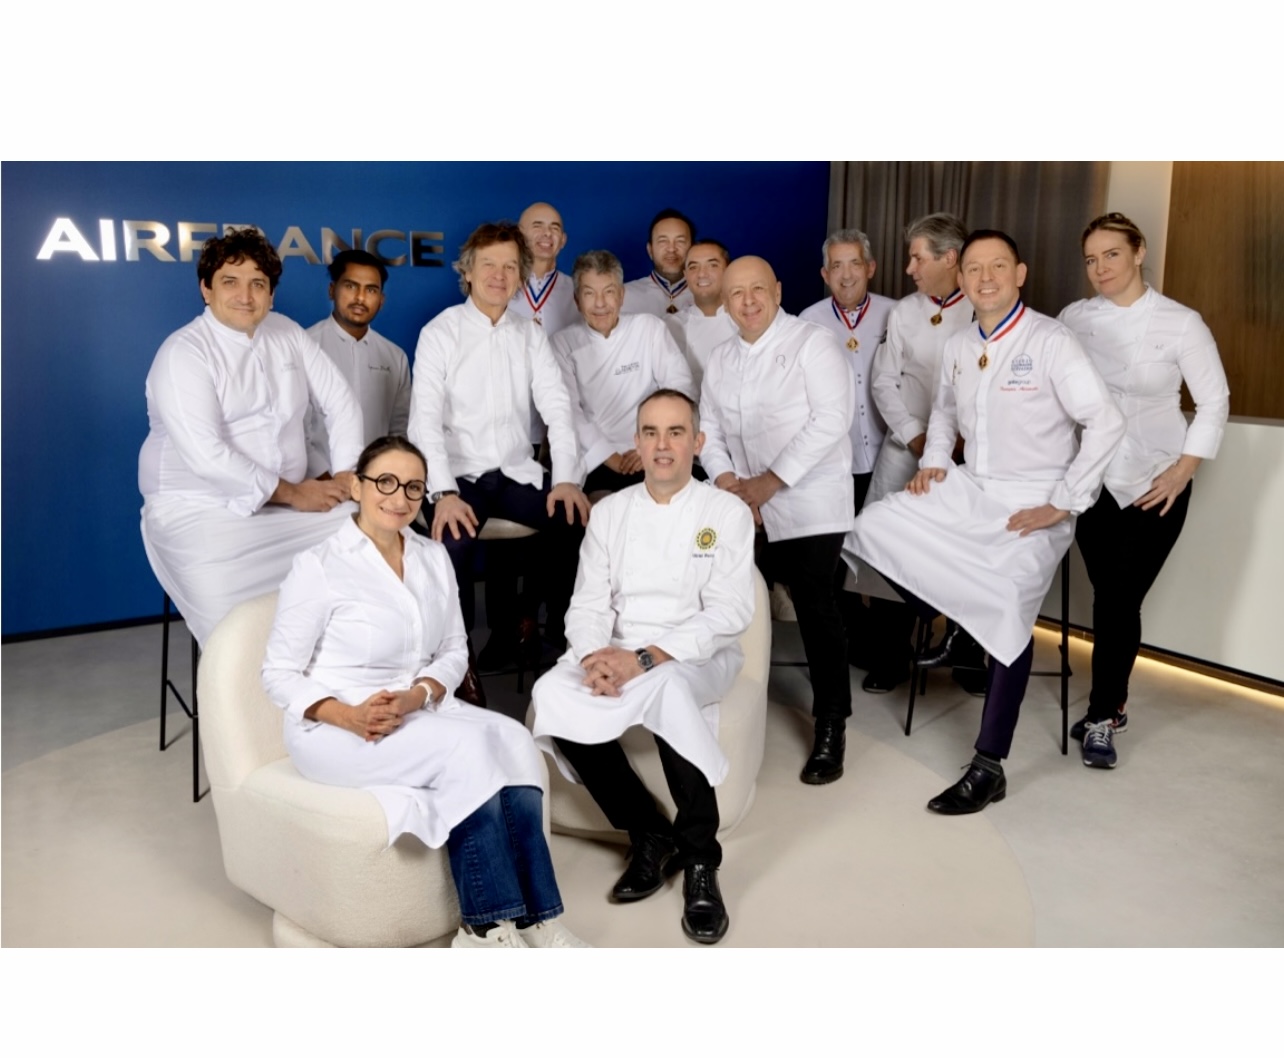 Un groupe de chefs, représentant la tradition gastronomique en France, posant pour une photo en l'honneur d'Air France.